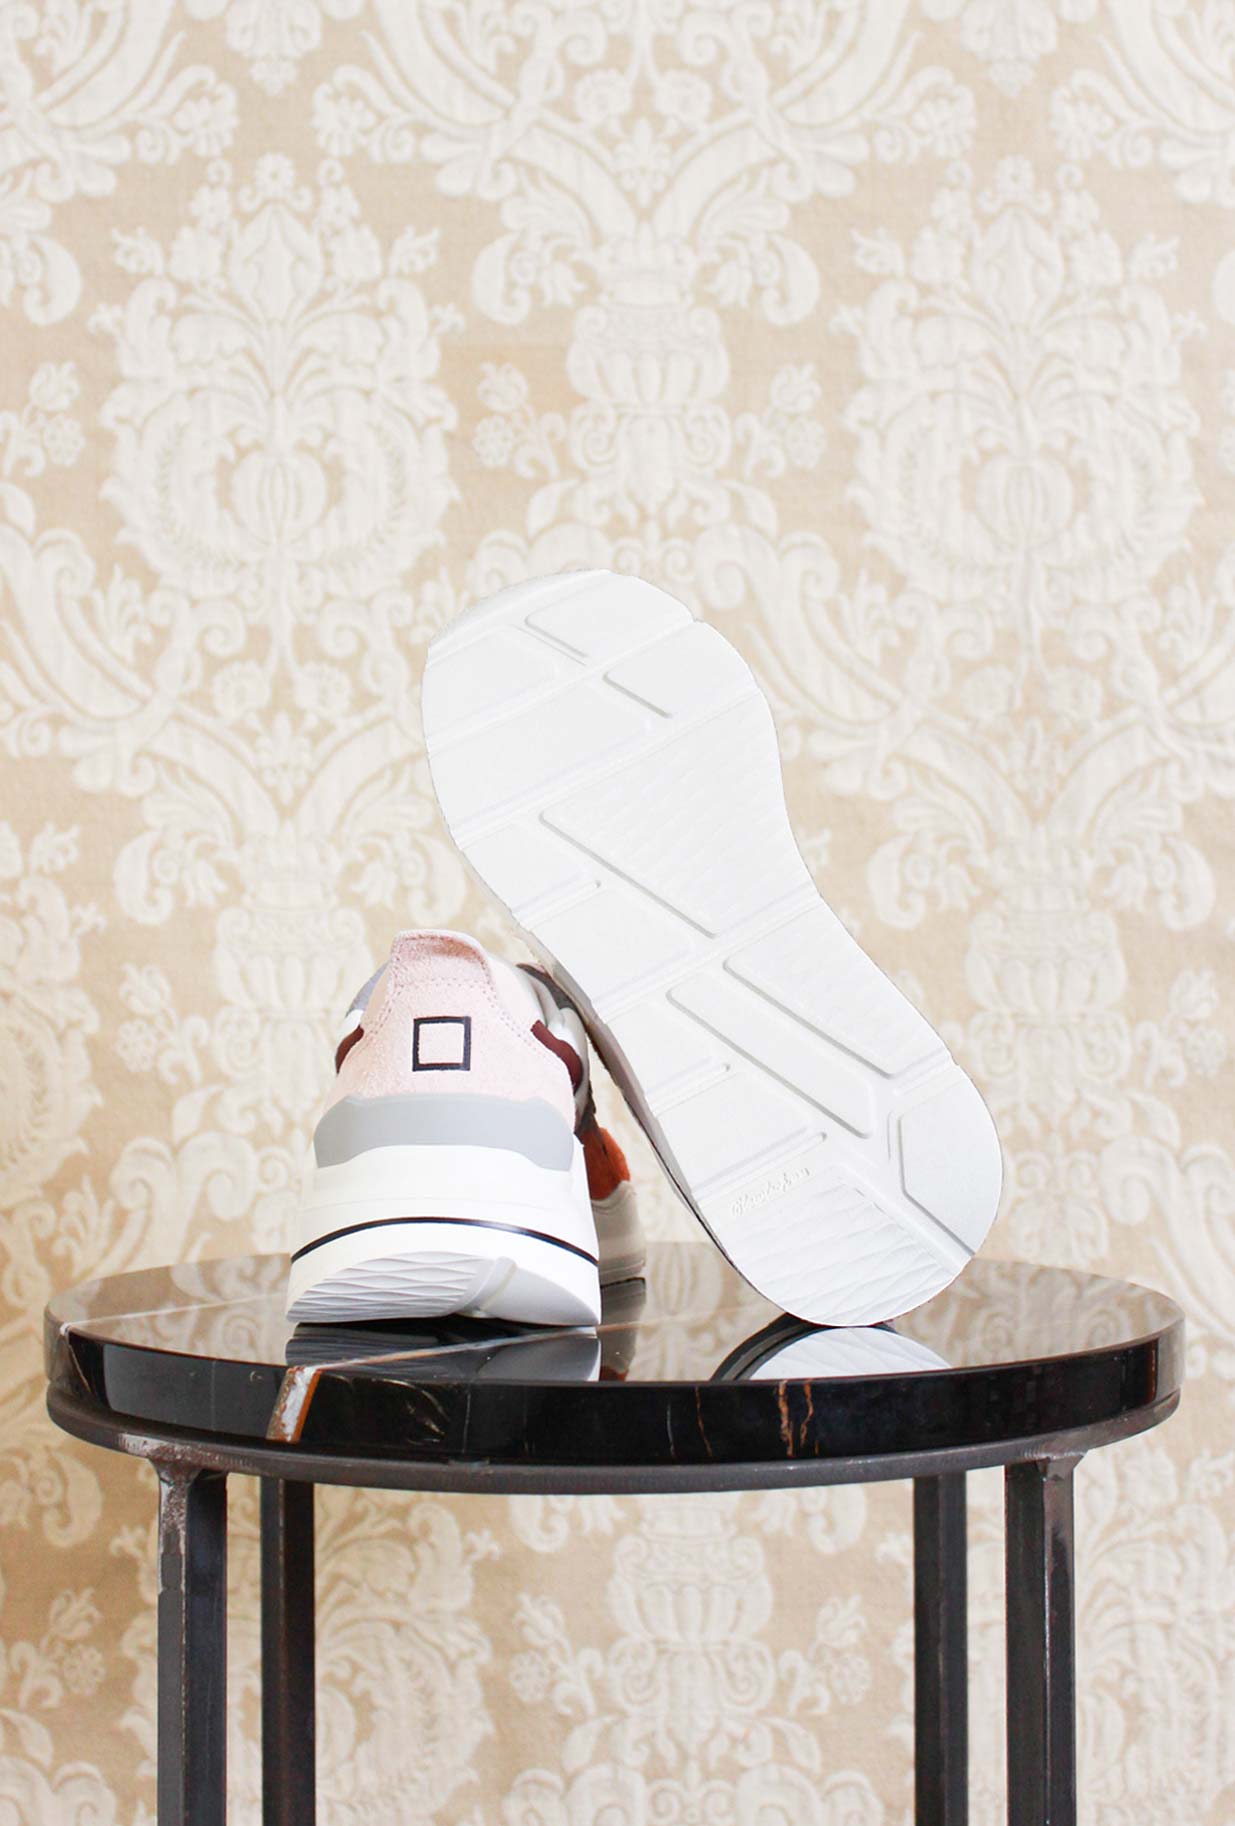 Sneakers fuga di DATE in suede e nylon color bordeaux ciliegia da donna